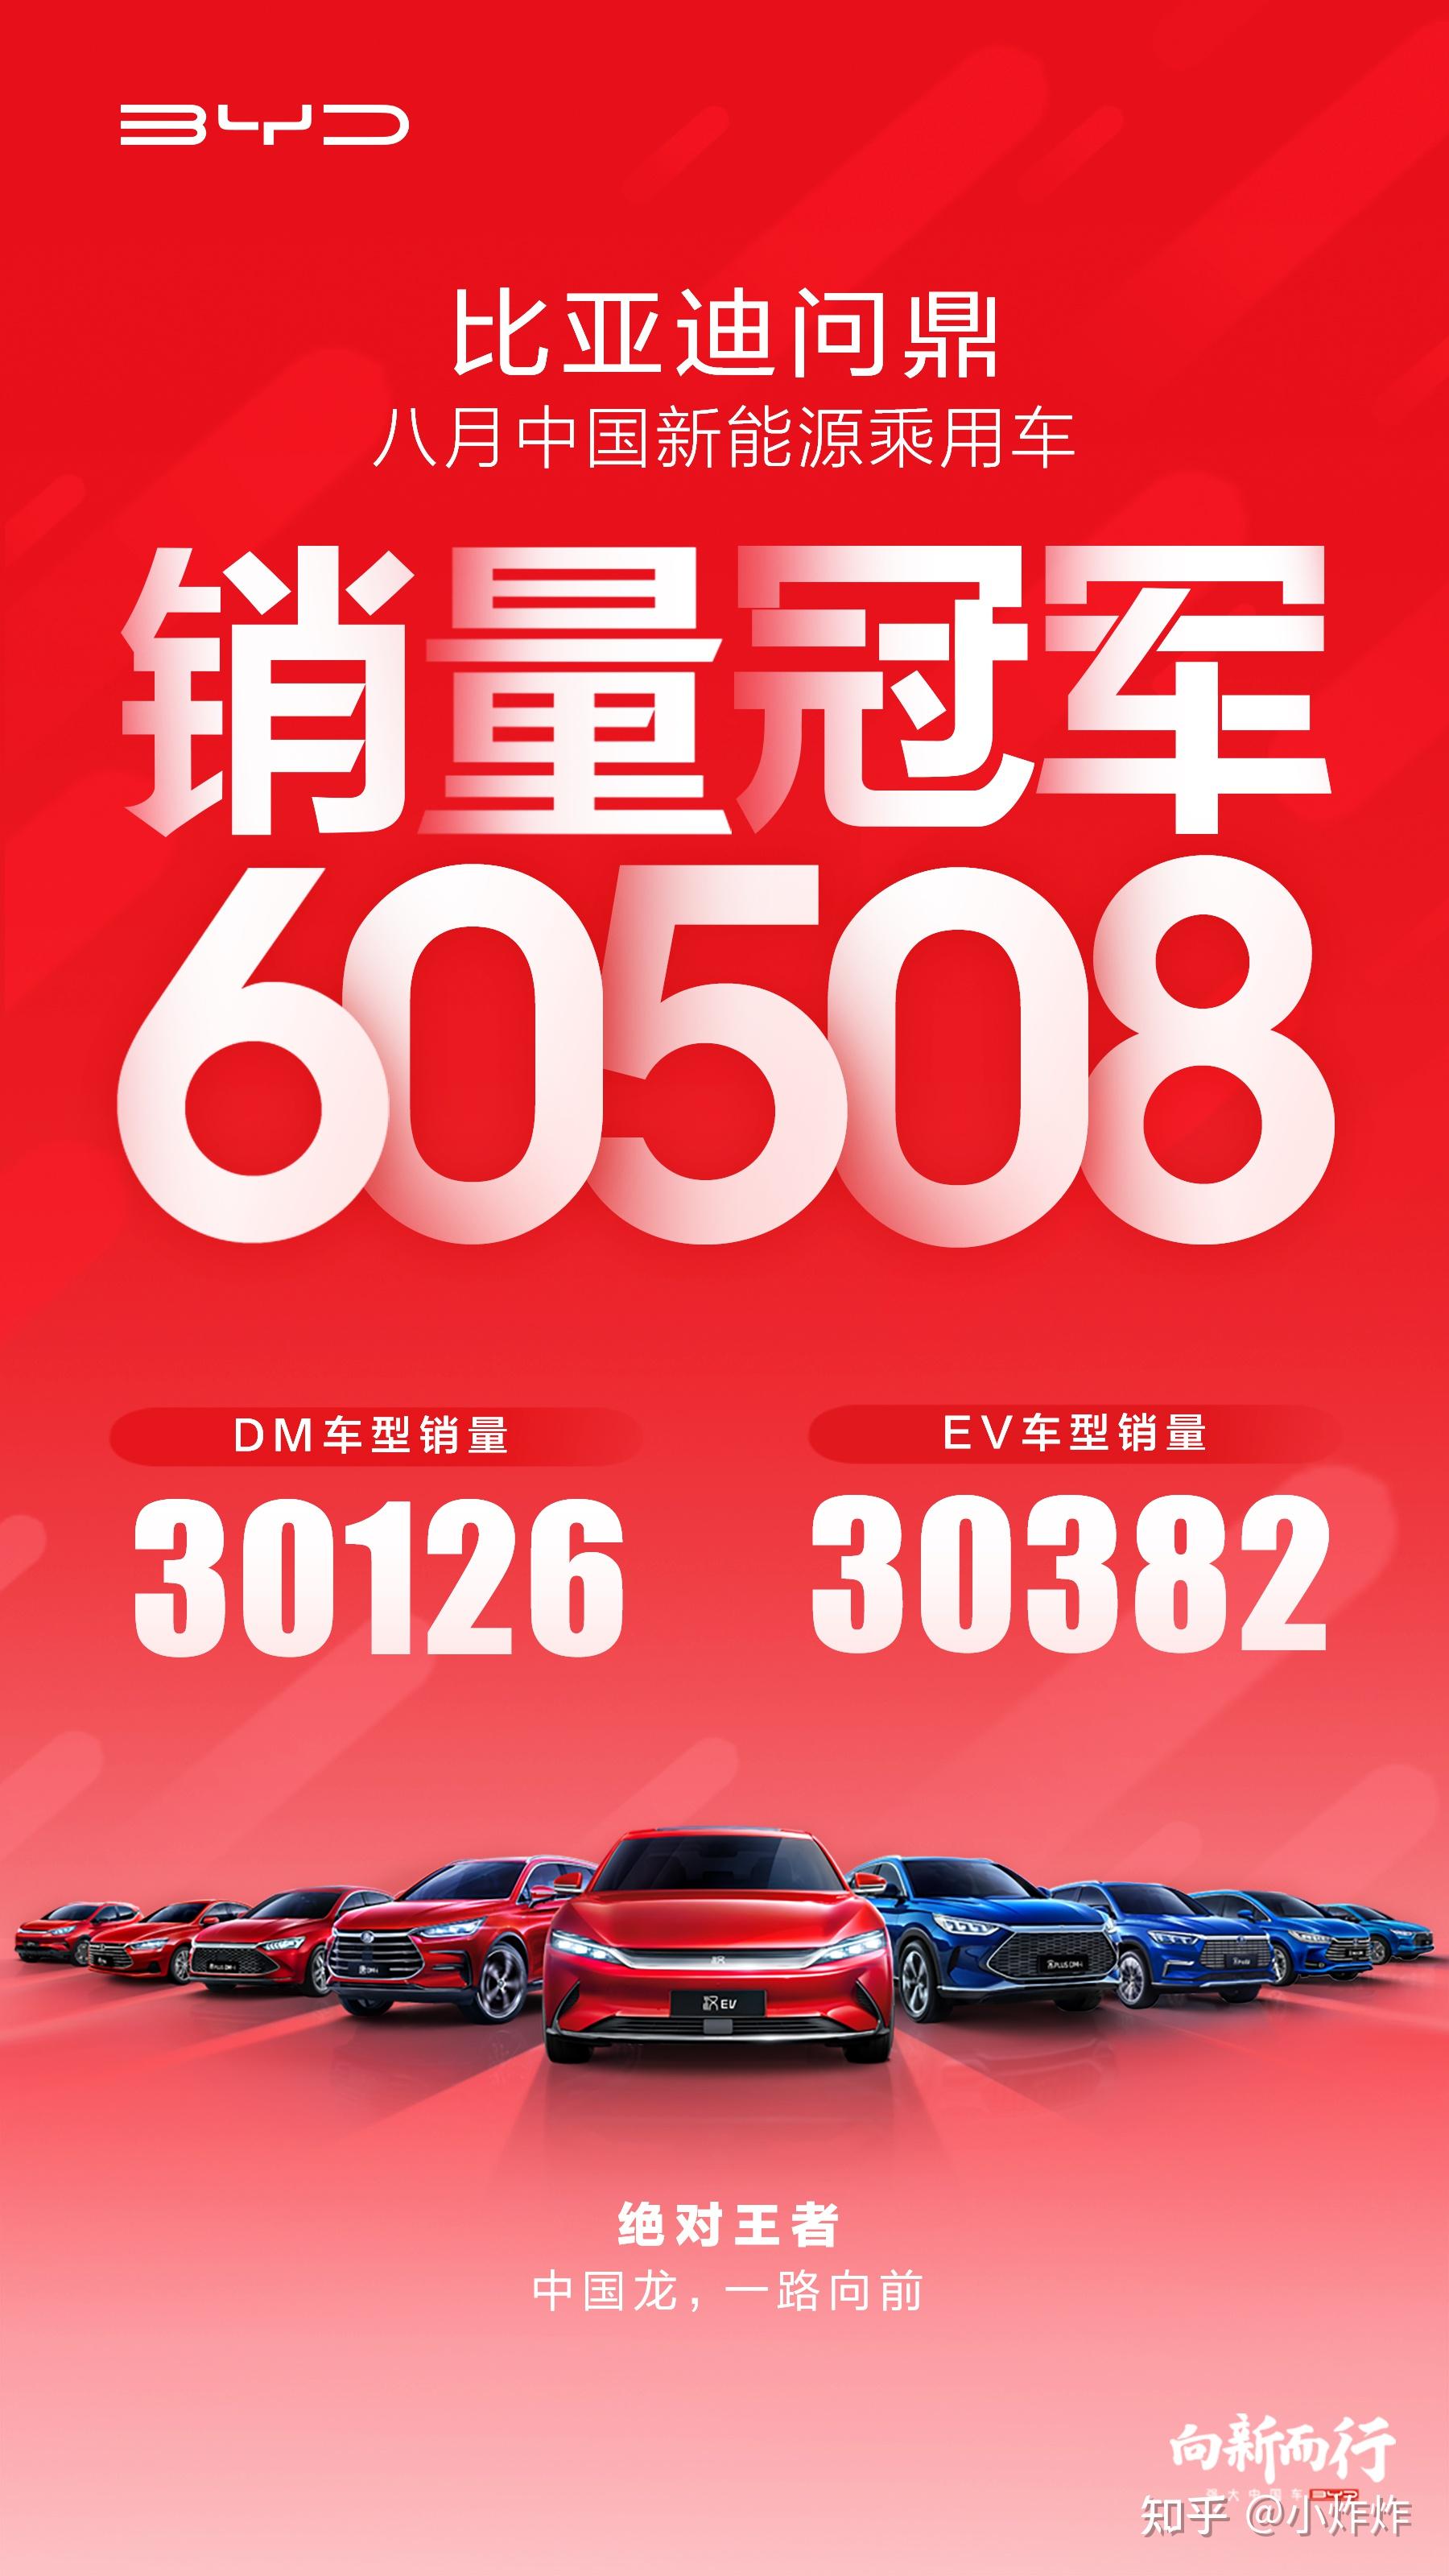 再度刷中国纪录比亚迪实现新能源乘用车月销三连冠